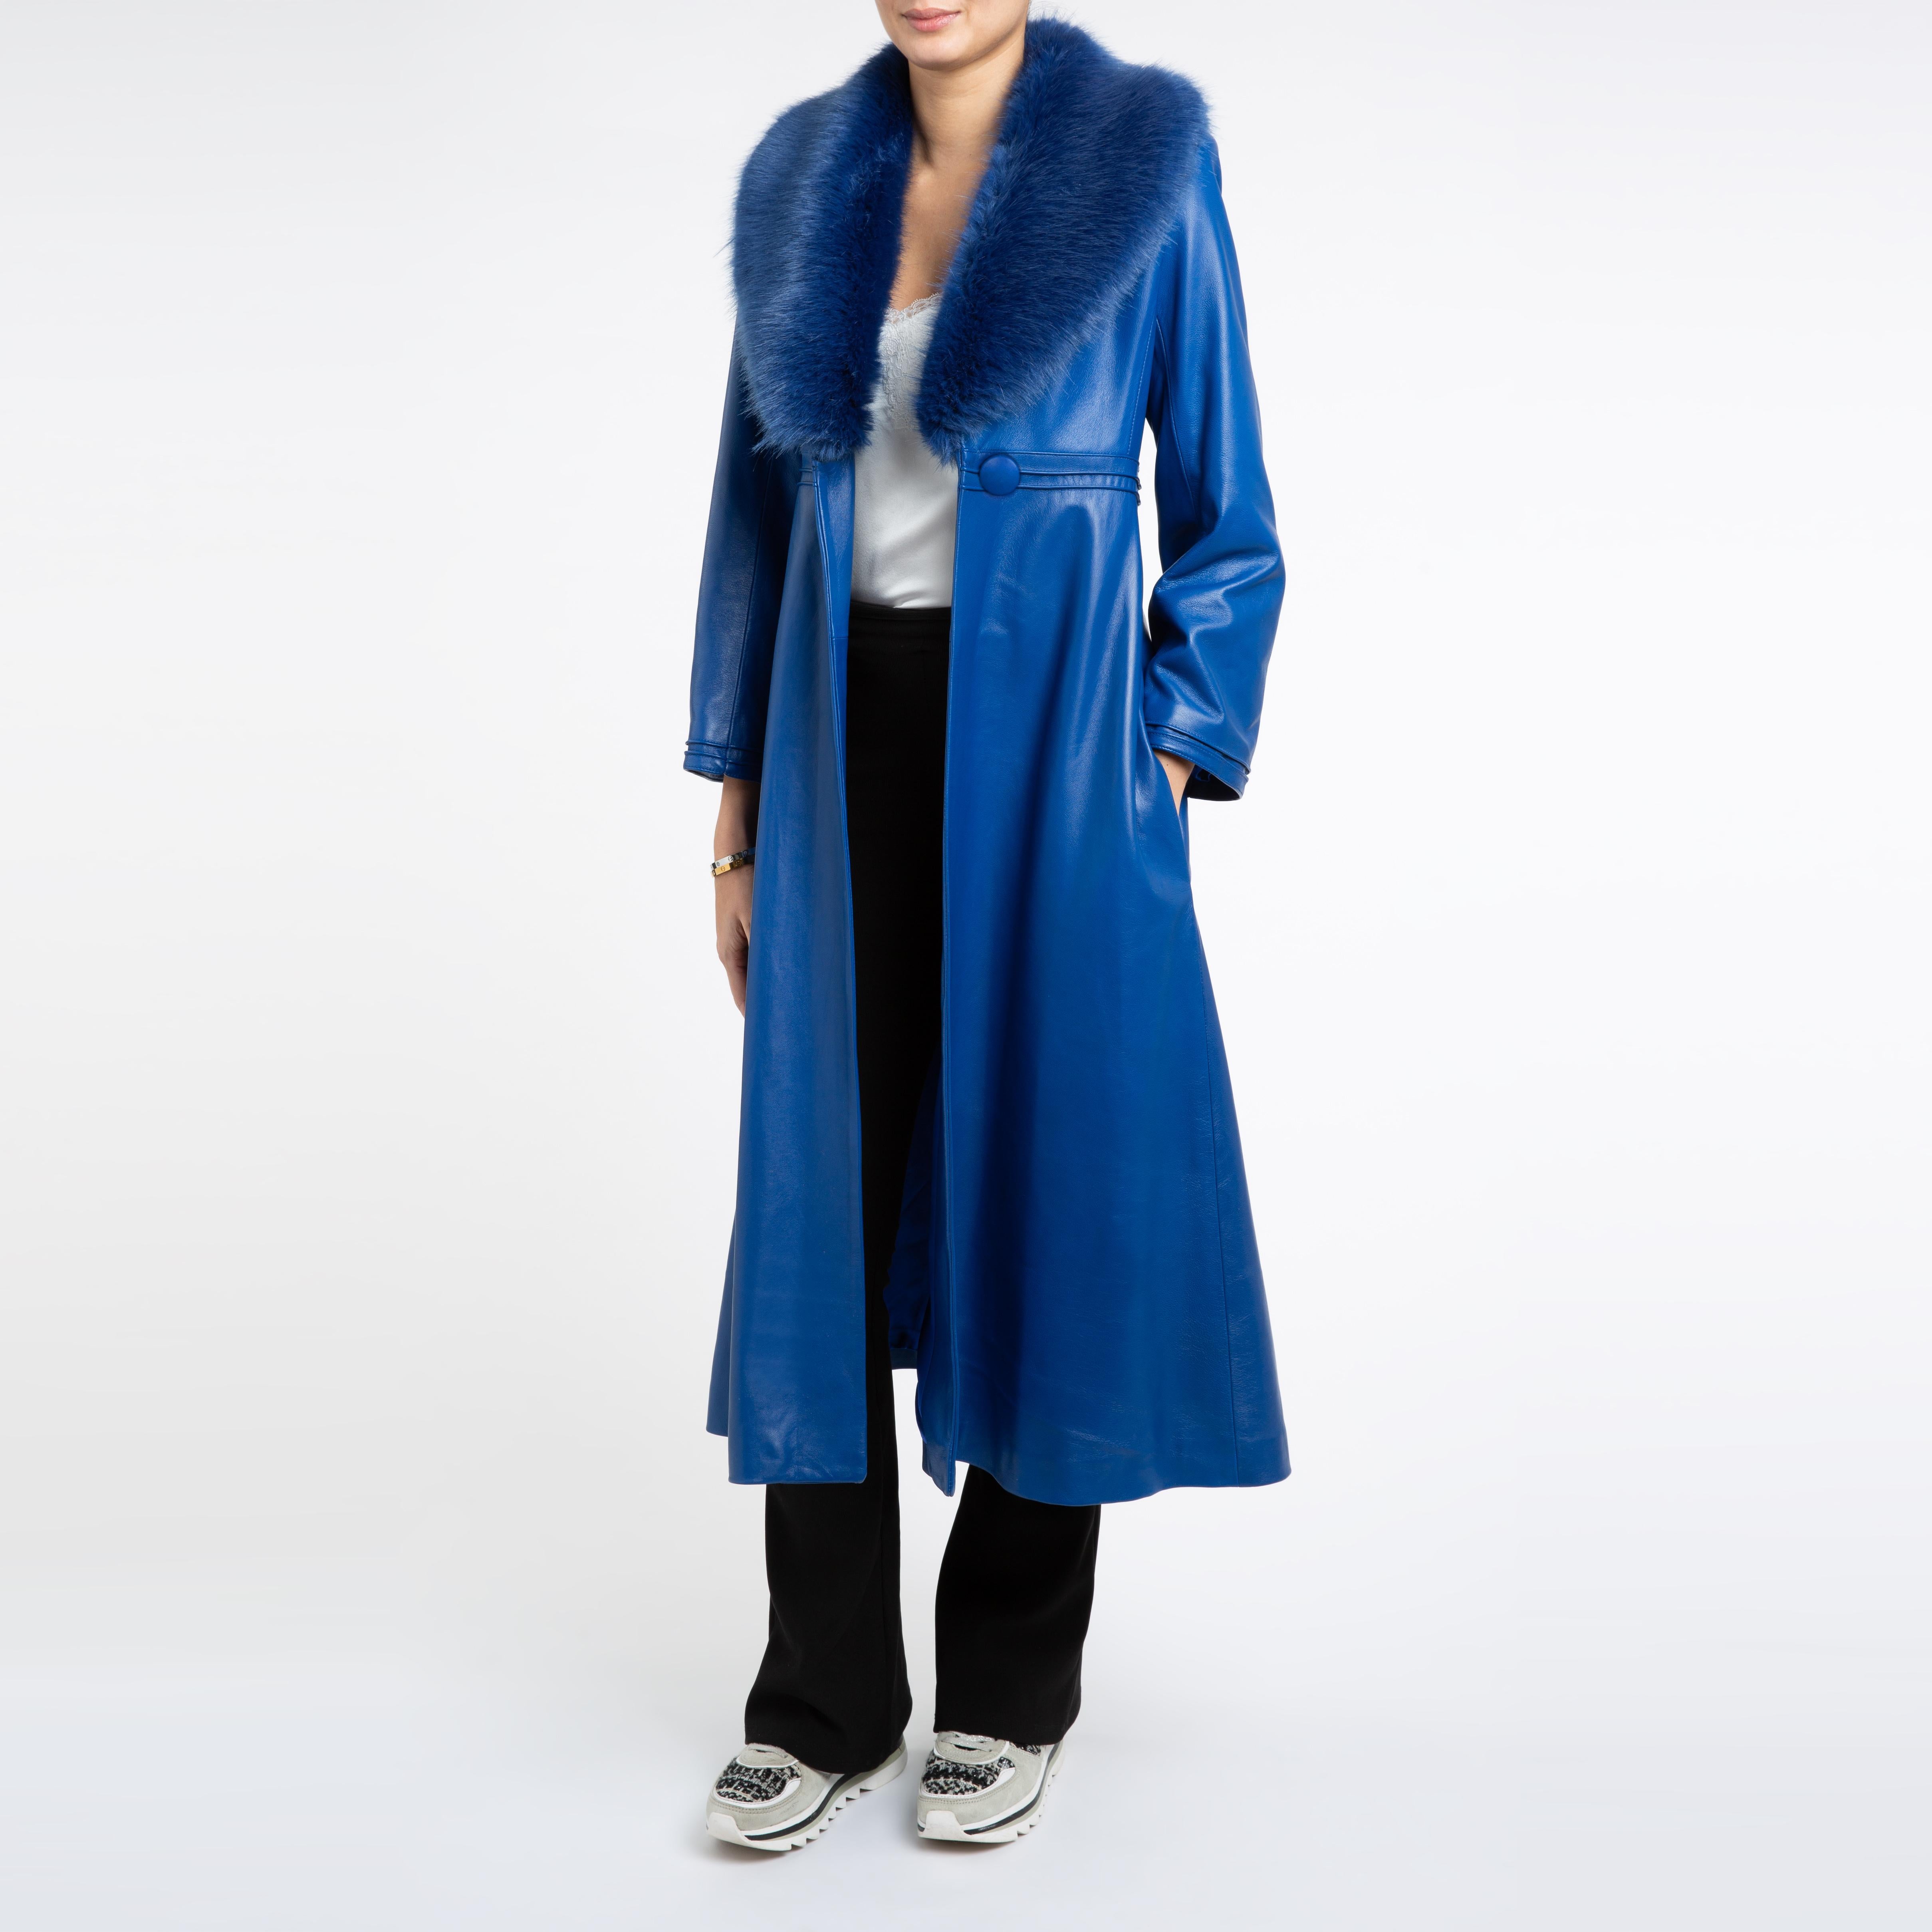 Verheyen London Edward Leather Coat in Blue with Faux Fur - Size uk 12 2